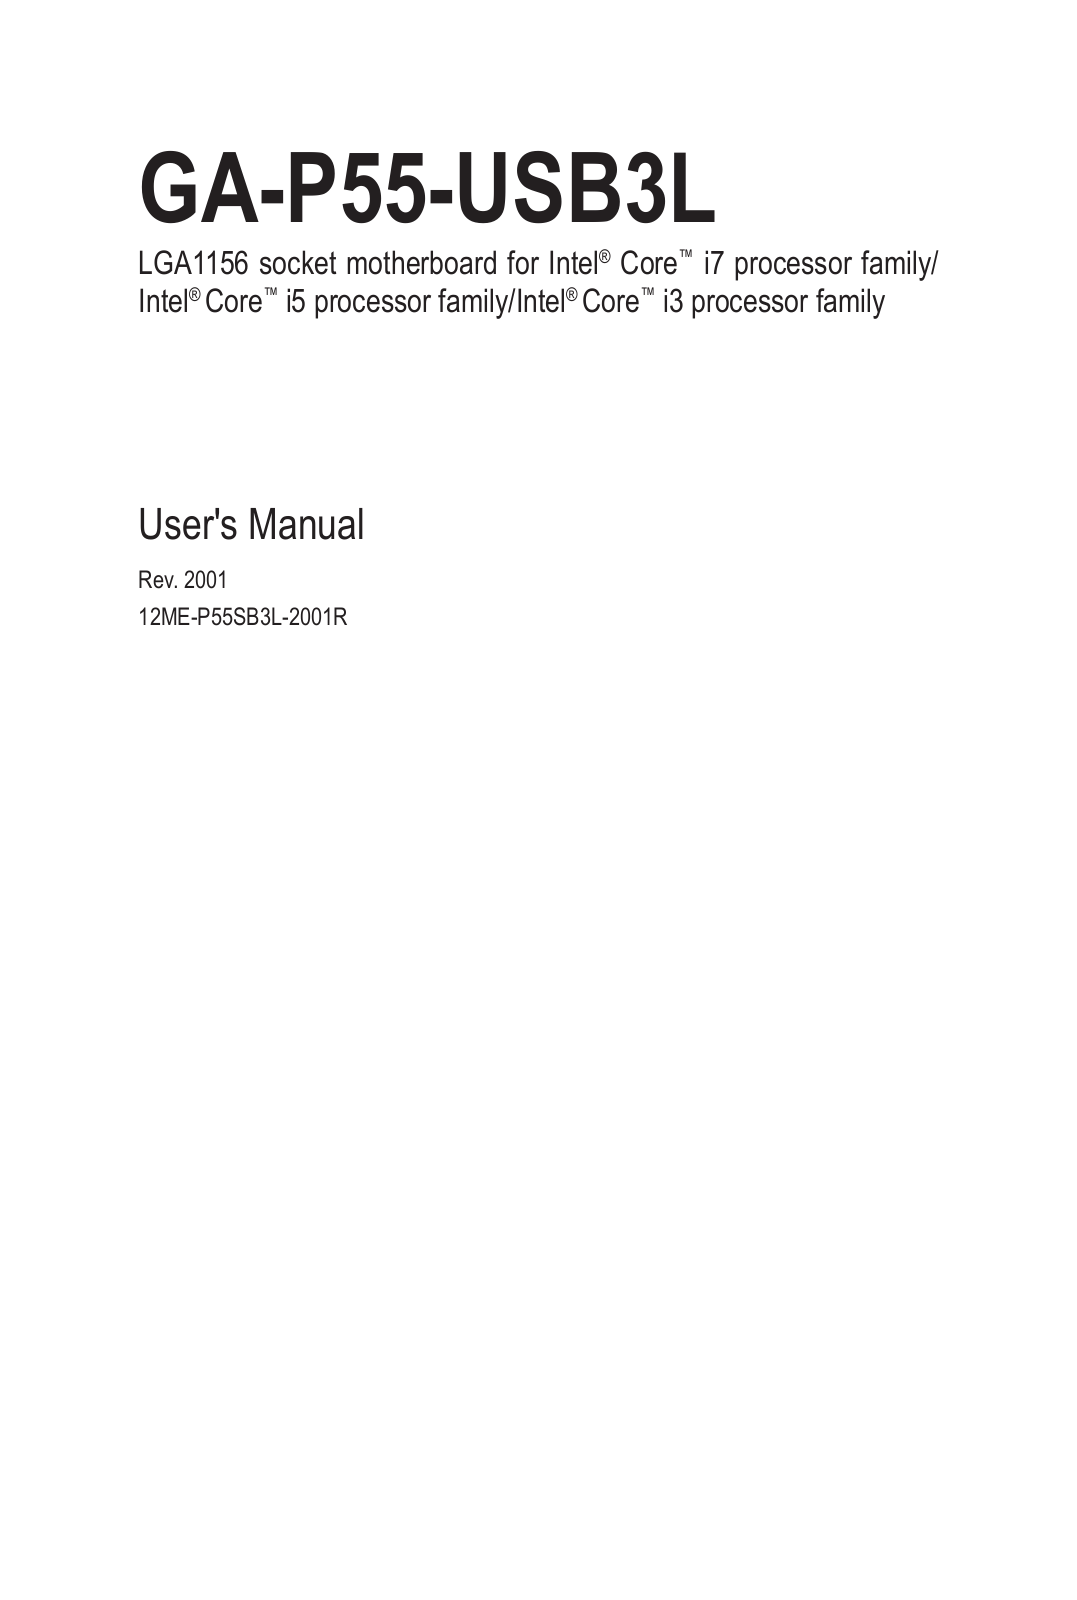 Gigabyte GA-P55-USB3L (rev. 2.0) User Manual